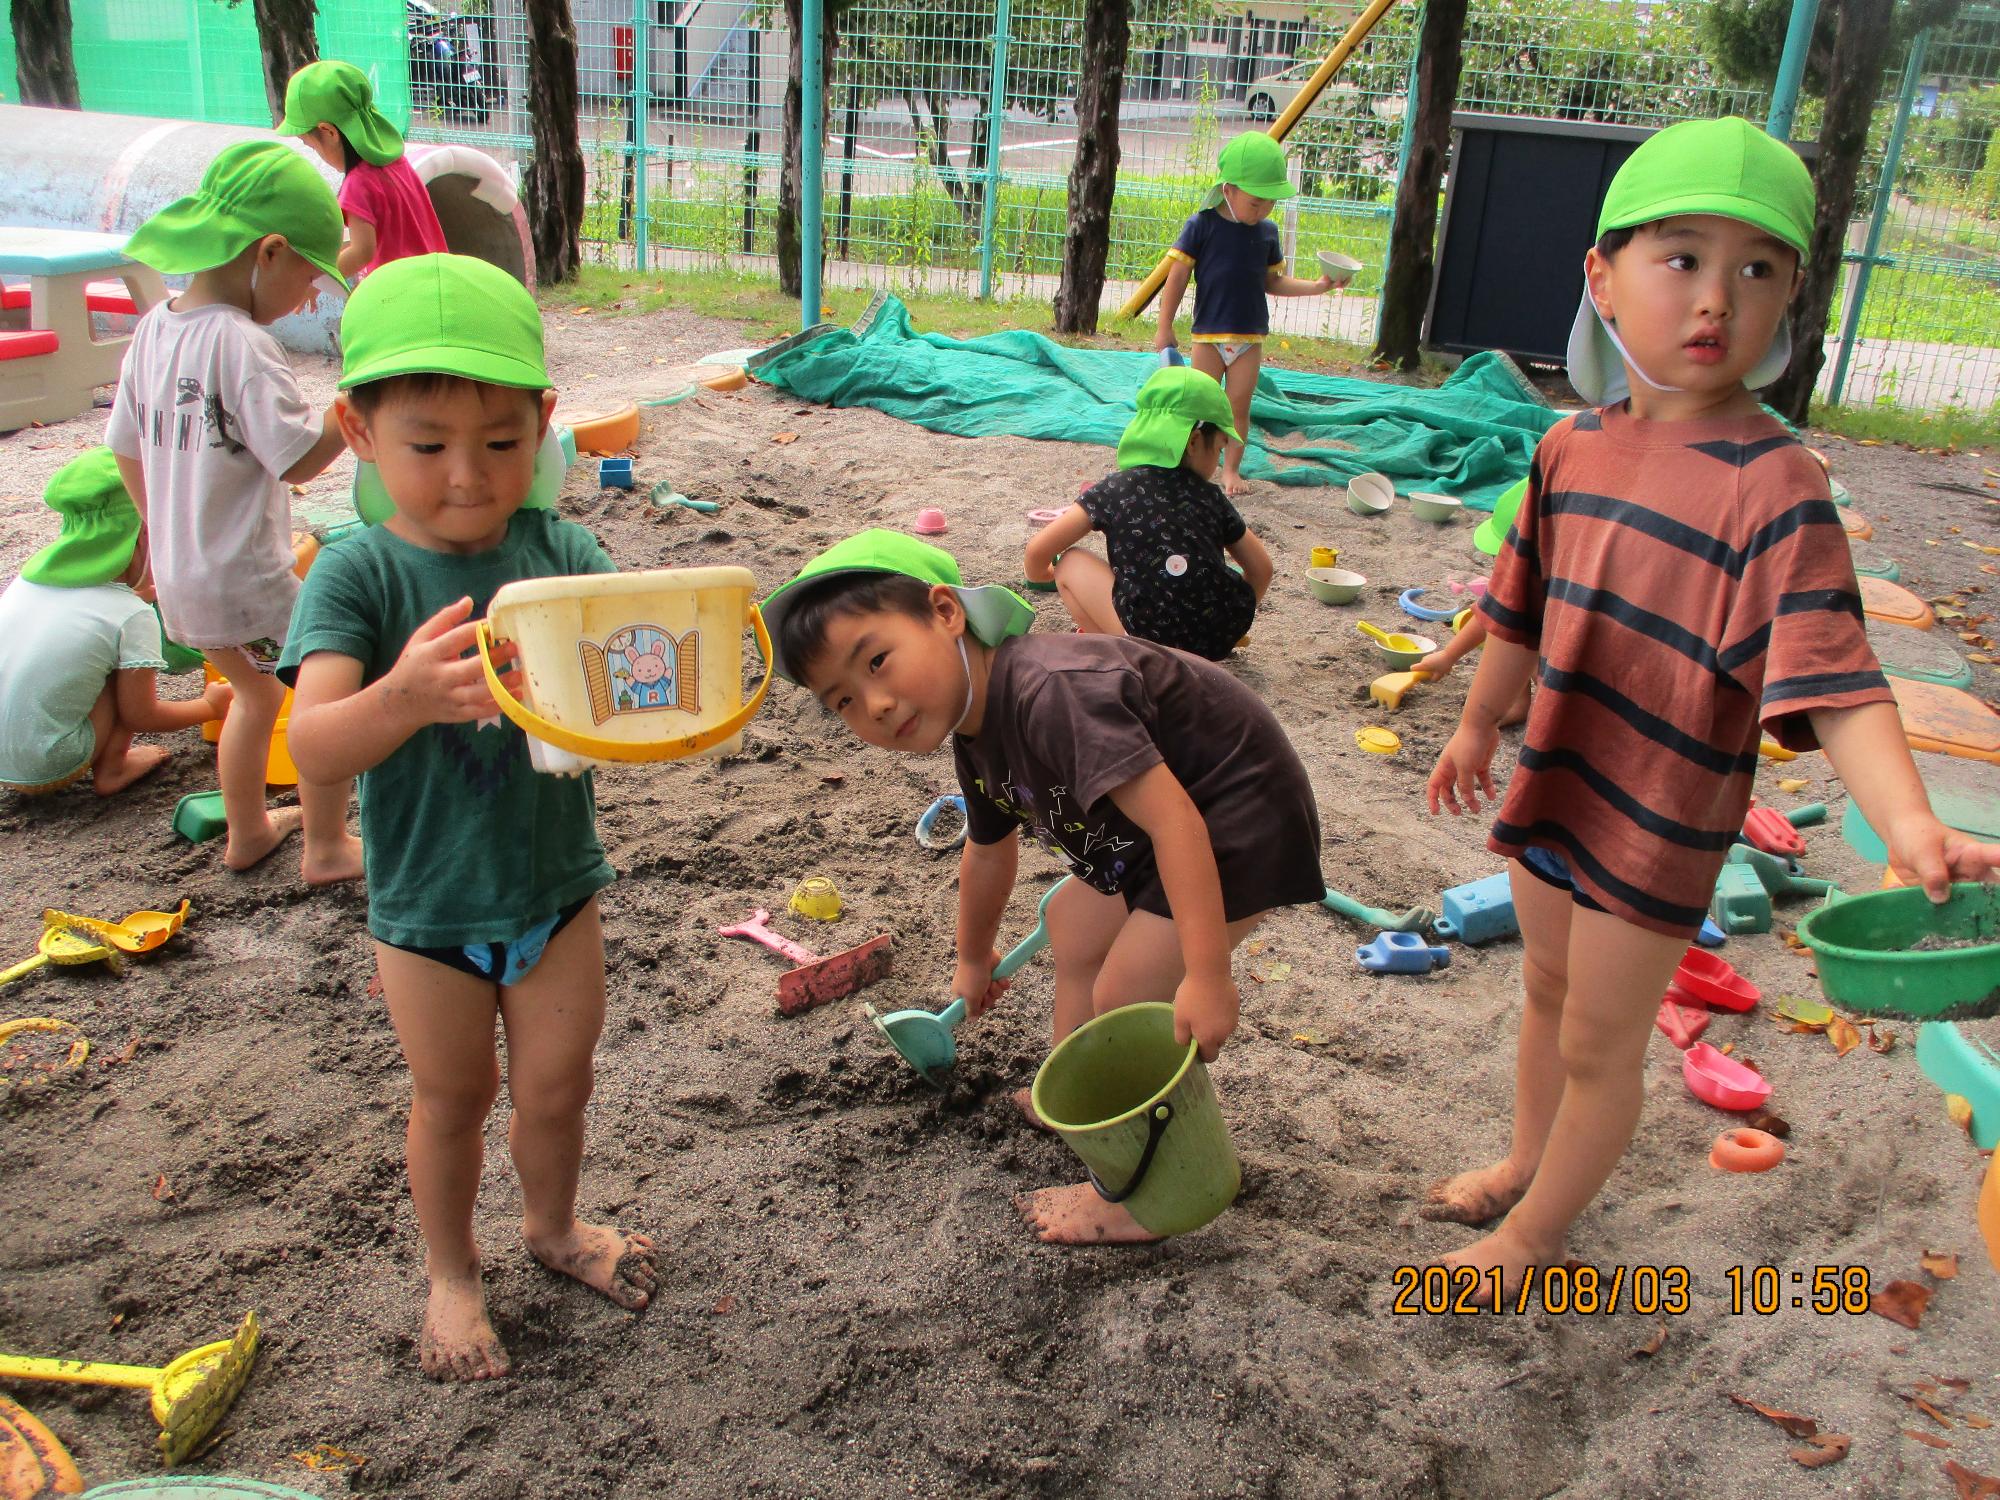 泥んこ遊びを楽しむすみれ組の子ども達です。